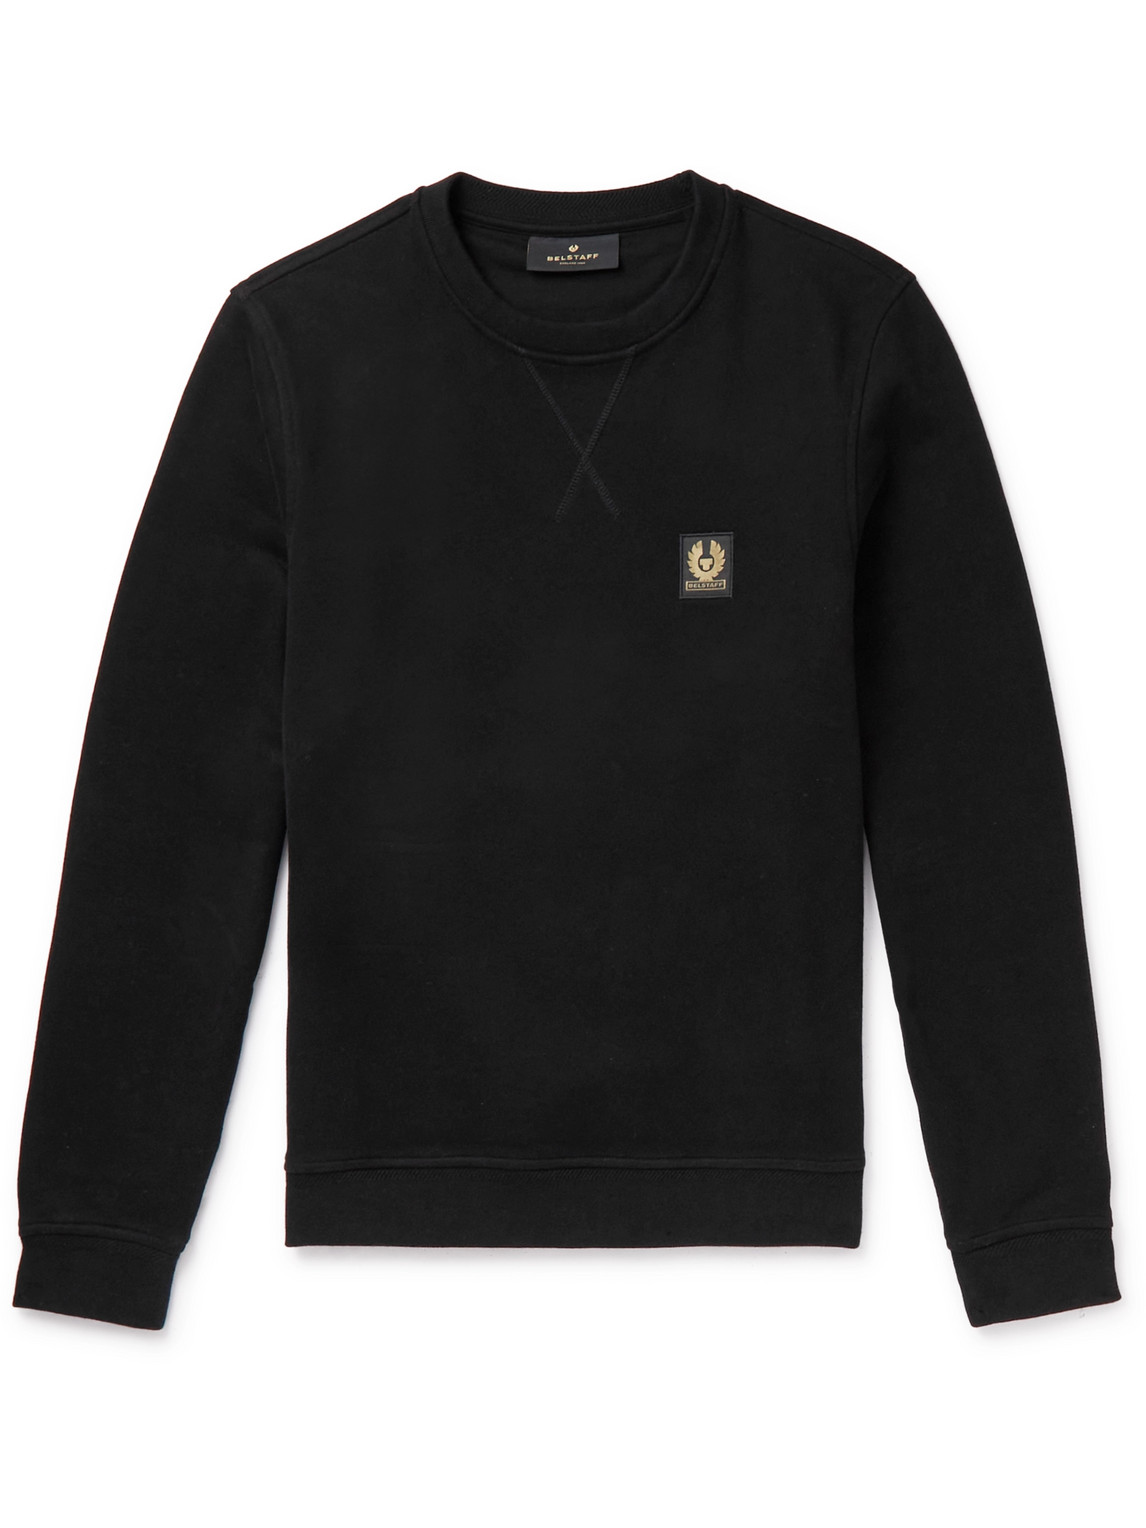 Belstaff - Logo-Appliquéd Garment-Dyed Cotton-Jersey Sweatshirt - Men - Black - XL von Belstaff